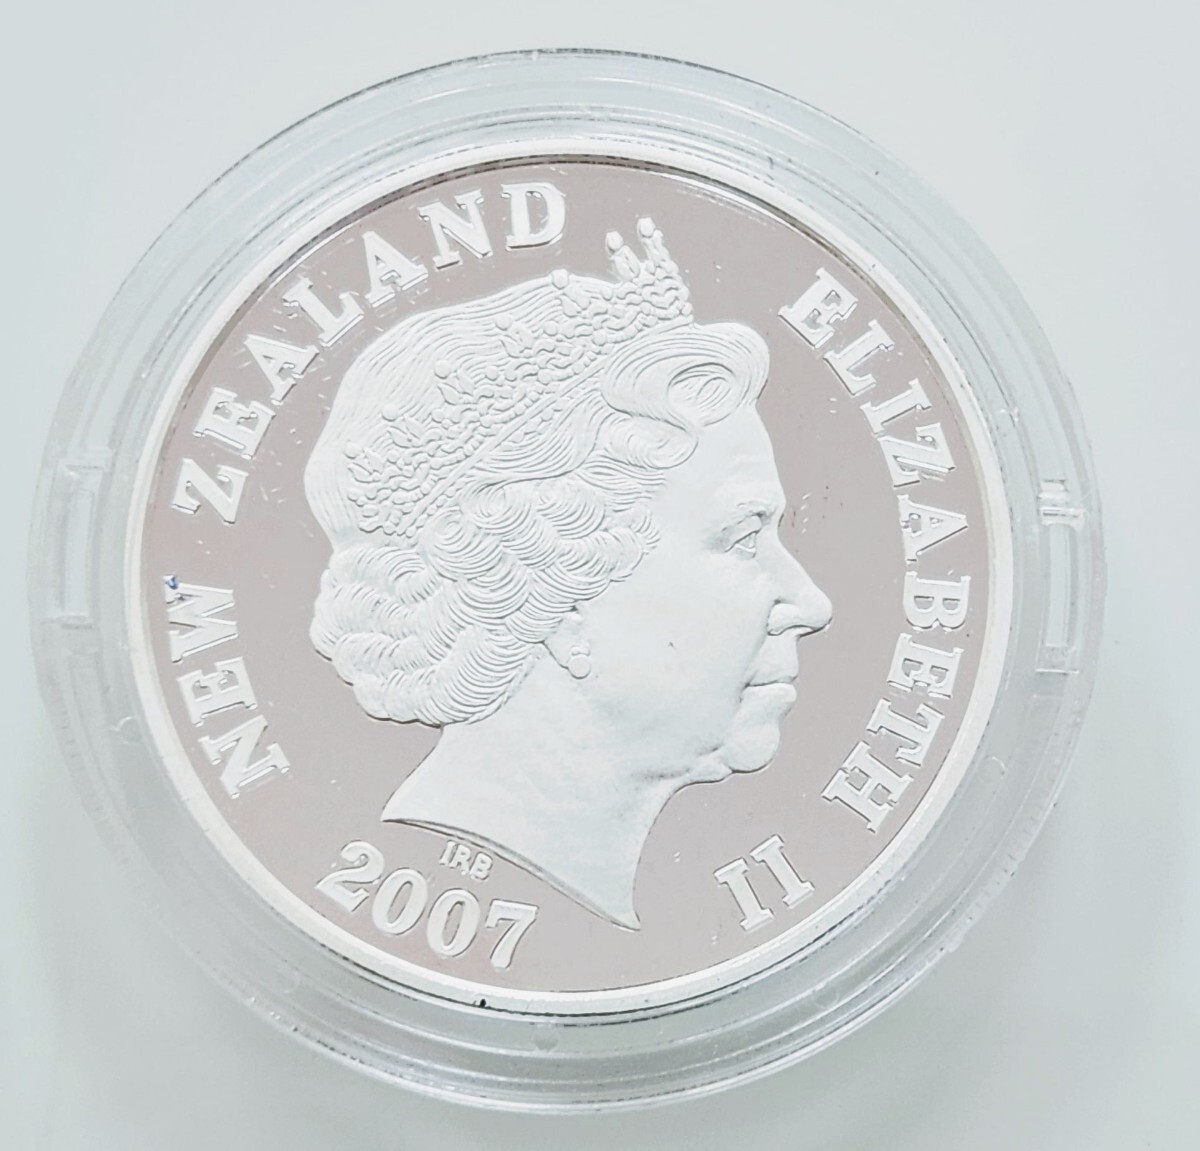 ◆◇ニュージーランド1ドルプルーフ銀貨幣 アオラキ マウント クック プルーフ貨幣セット 2007年 記念 銀貨◇◆の画像2